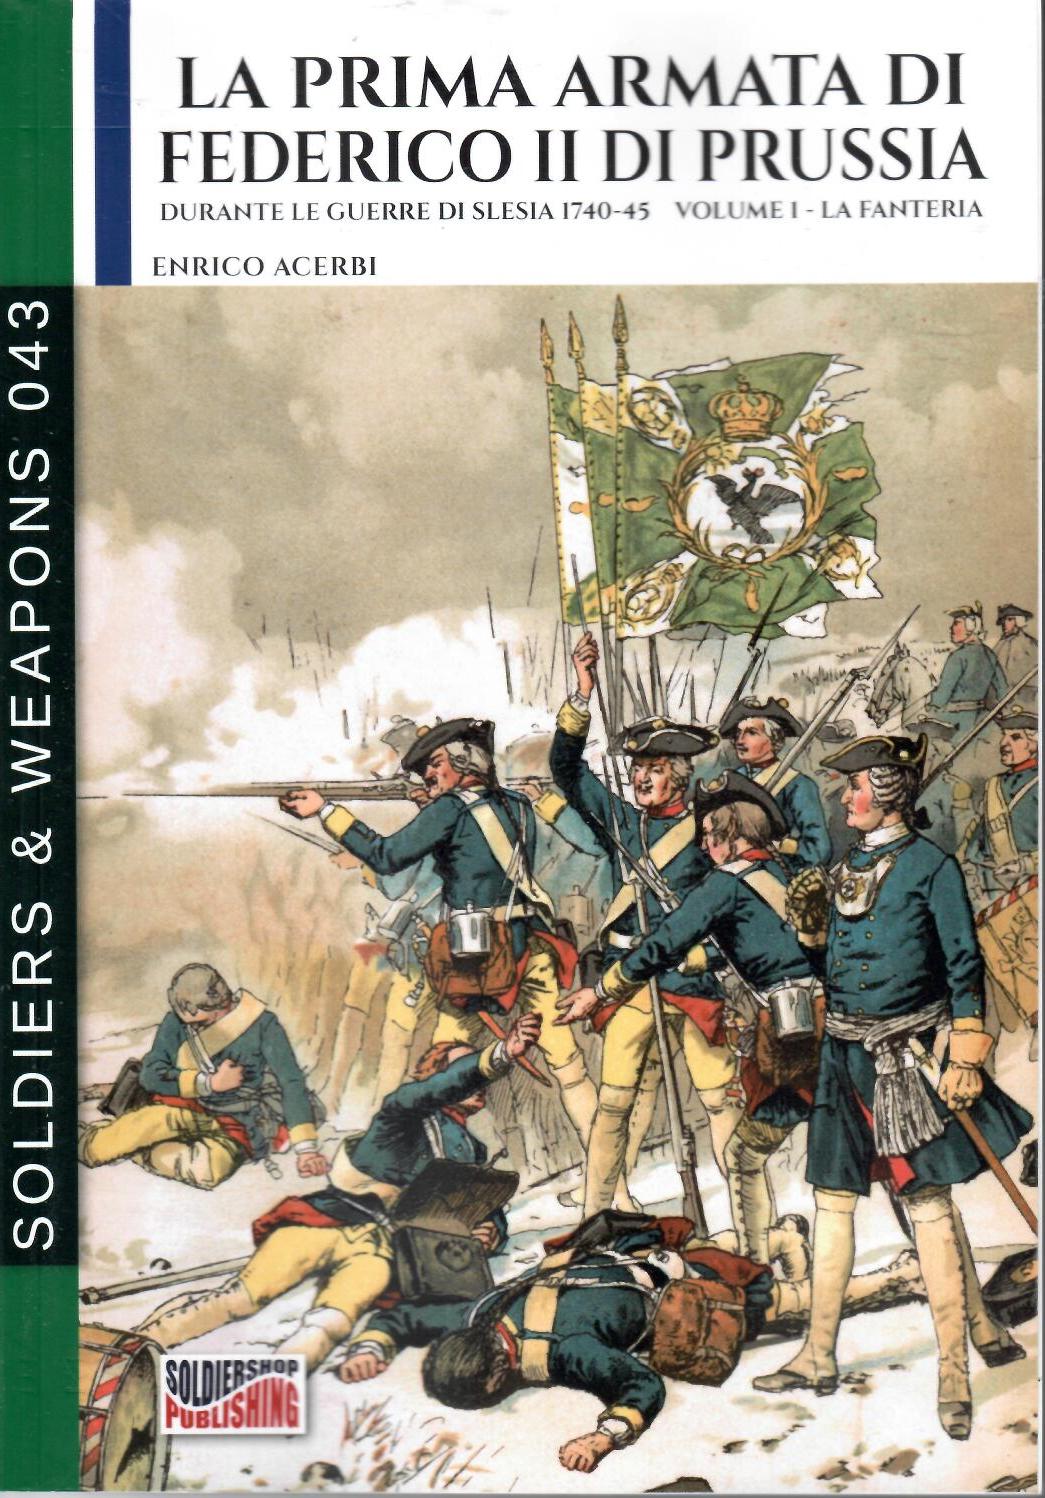 La prima armata di Federico II di Prussia durante le guerre di Slesia 1740-45. Volume I – La fanteria